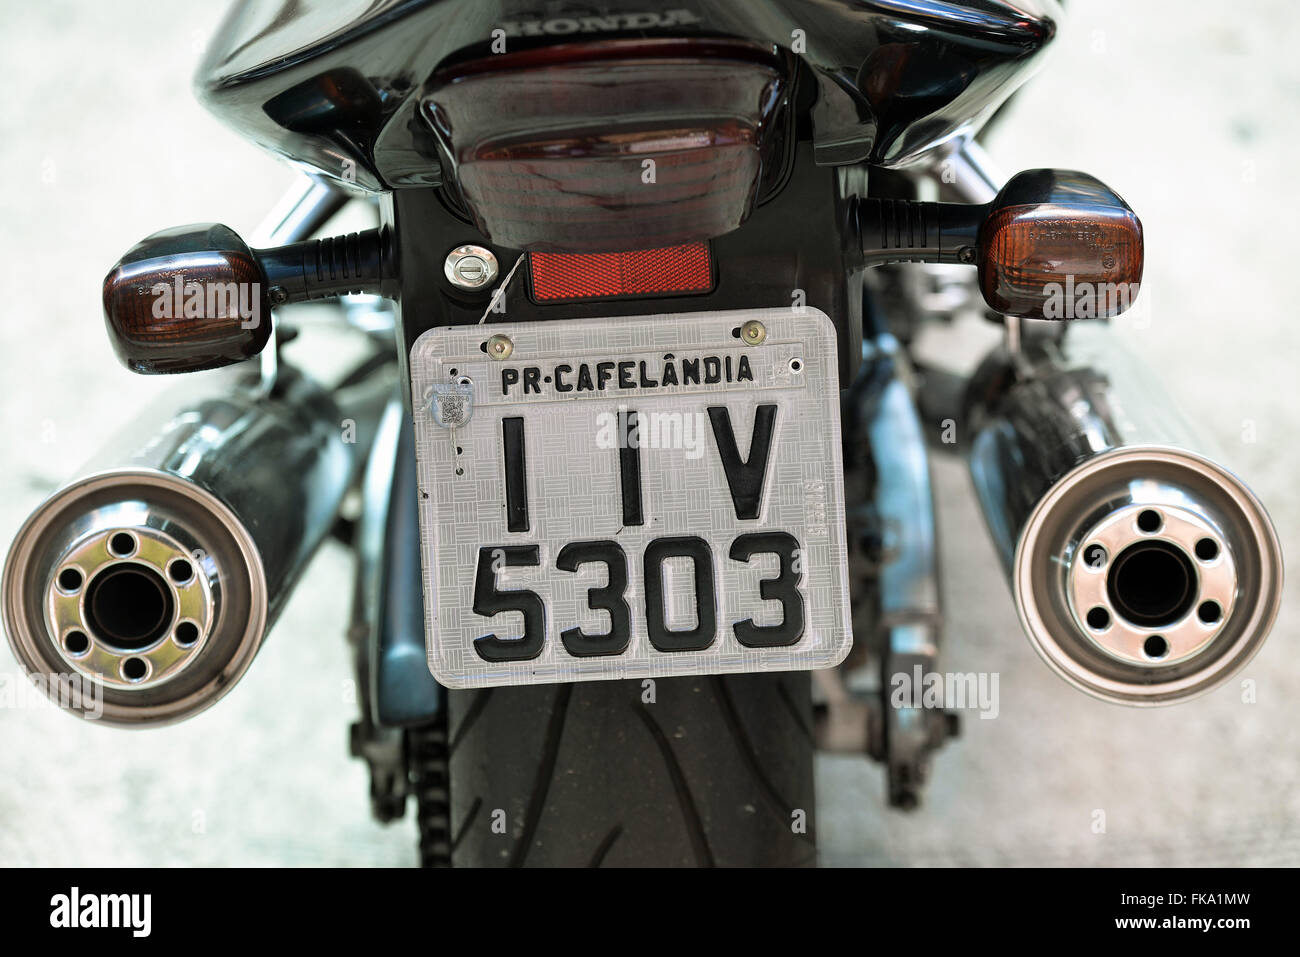 Placa de motocicleta do Cafel‚ndia-PR Stock Photo